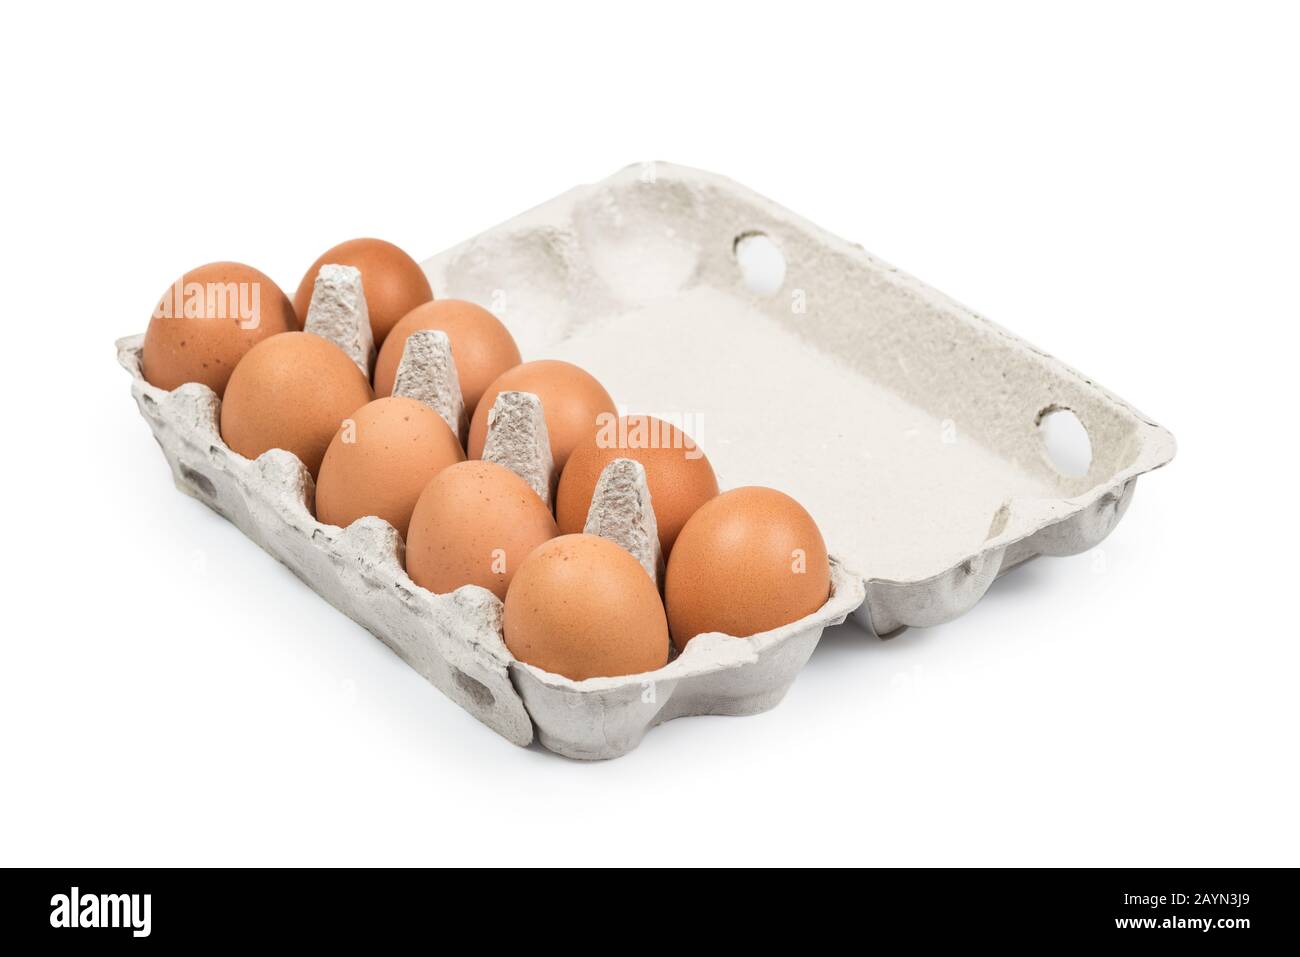 Zehn braune Eier in der Kartonverpackung, hochwinkelig isoliert auf weiß. Clipping-Pfad für einfaches Ausschneiden Stockfoto